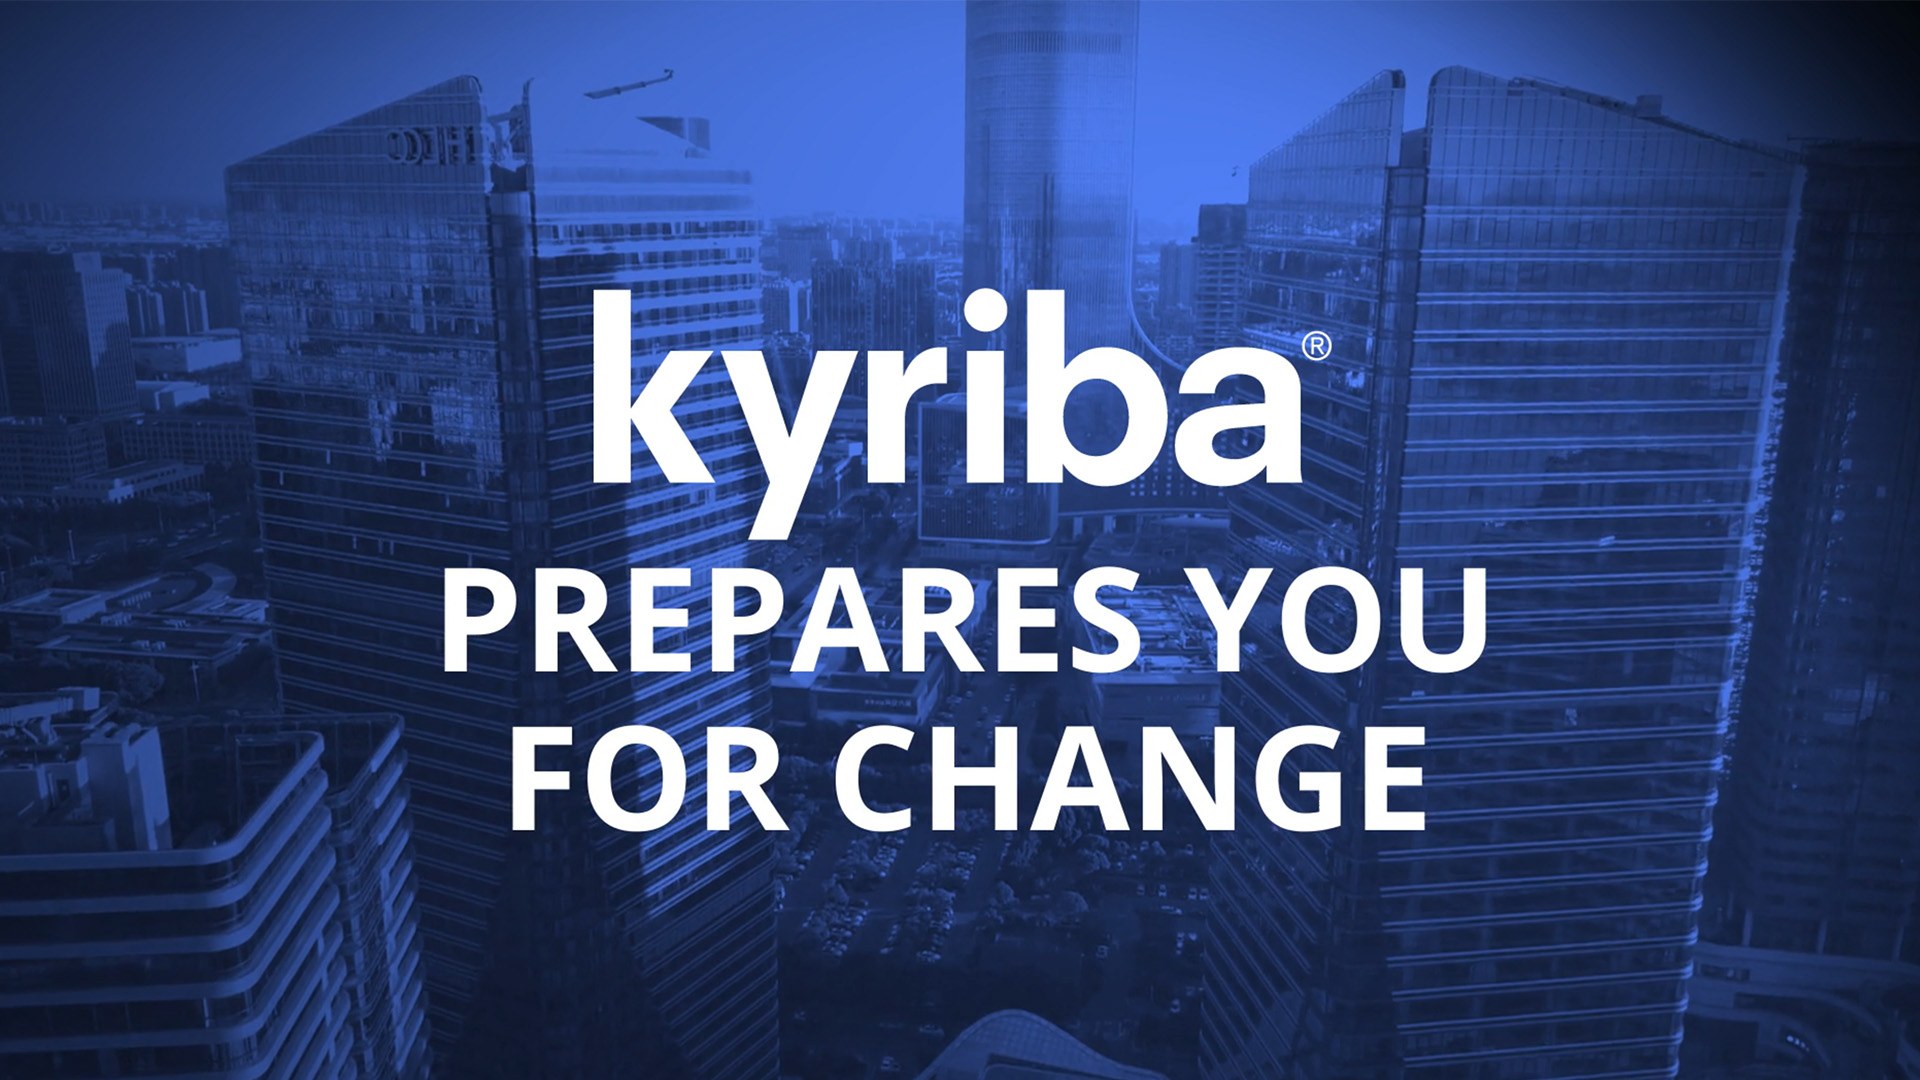 Kyriba prepares you for change